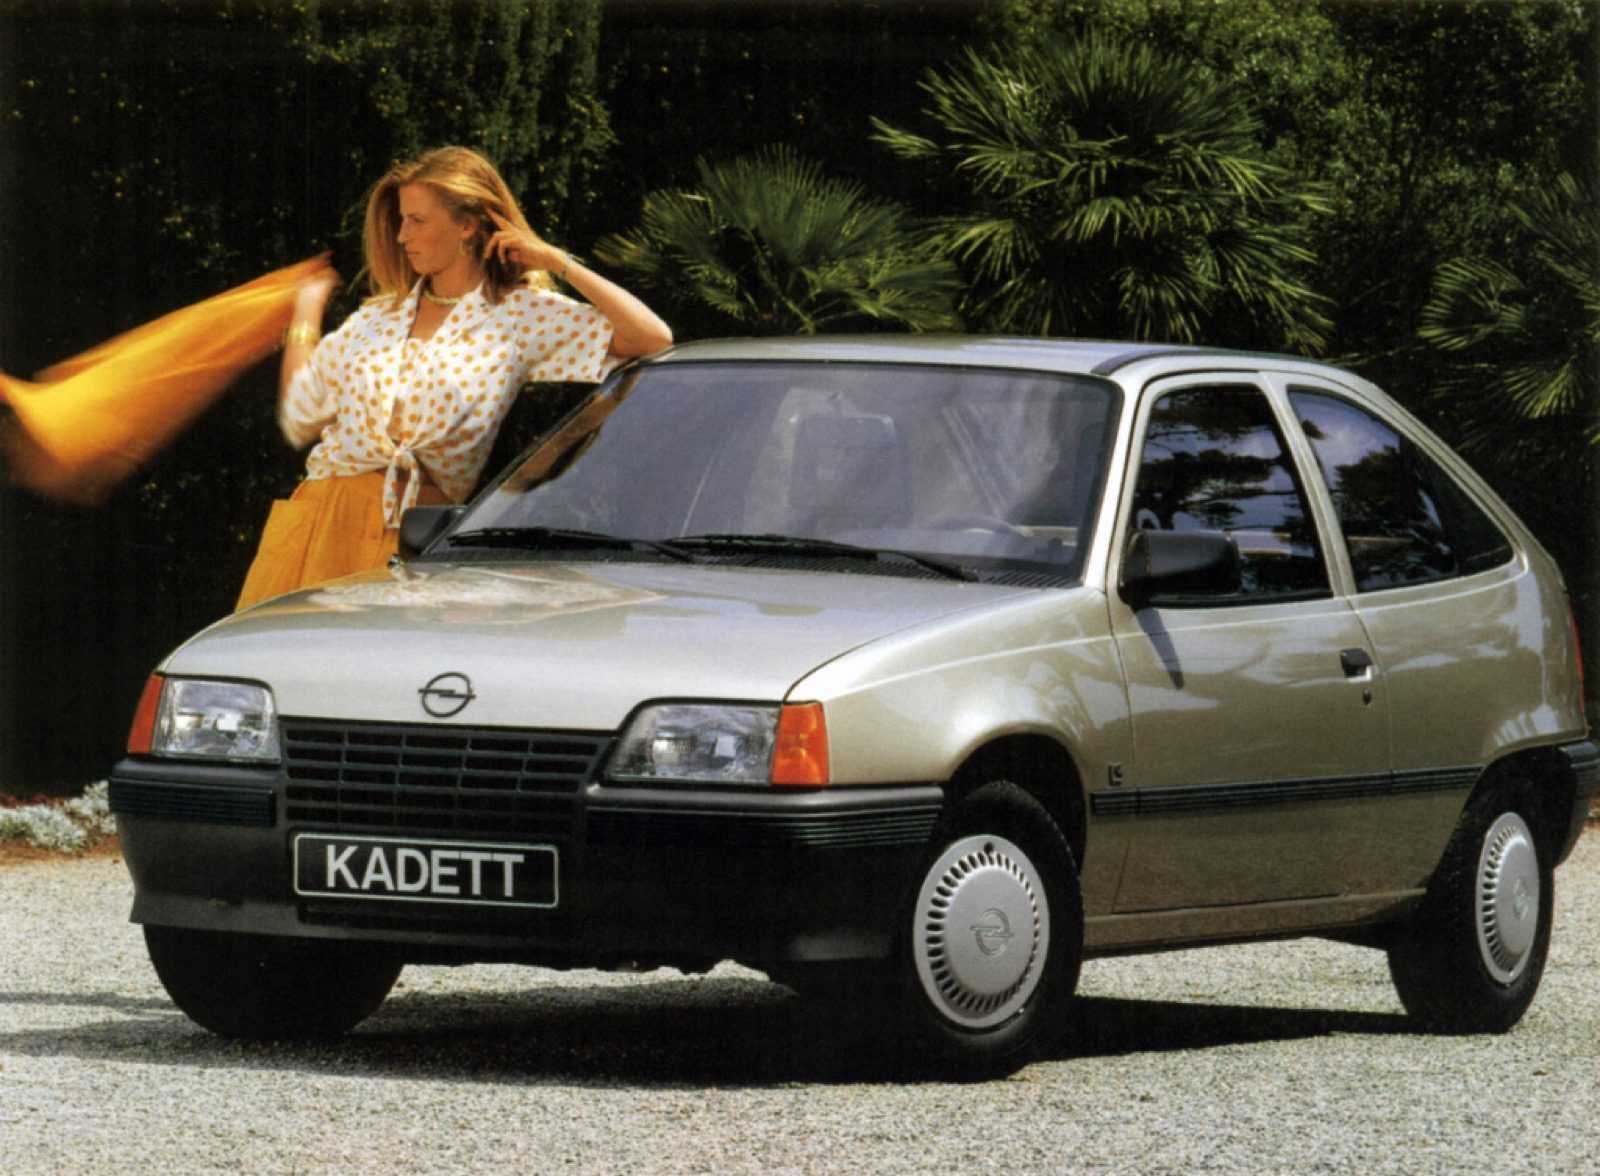 Opel Kadett-klonen